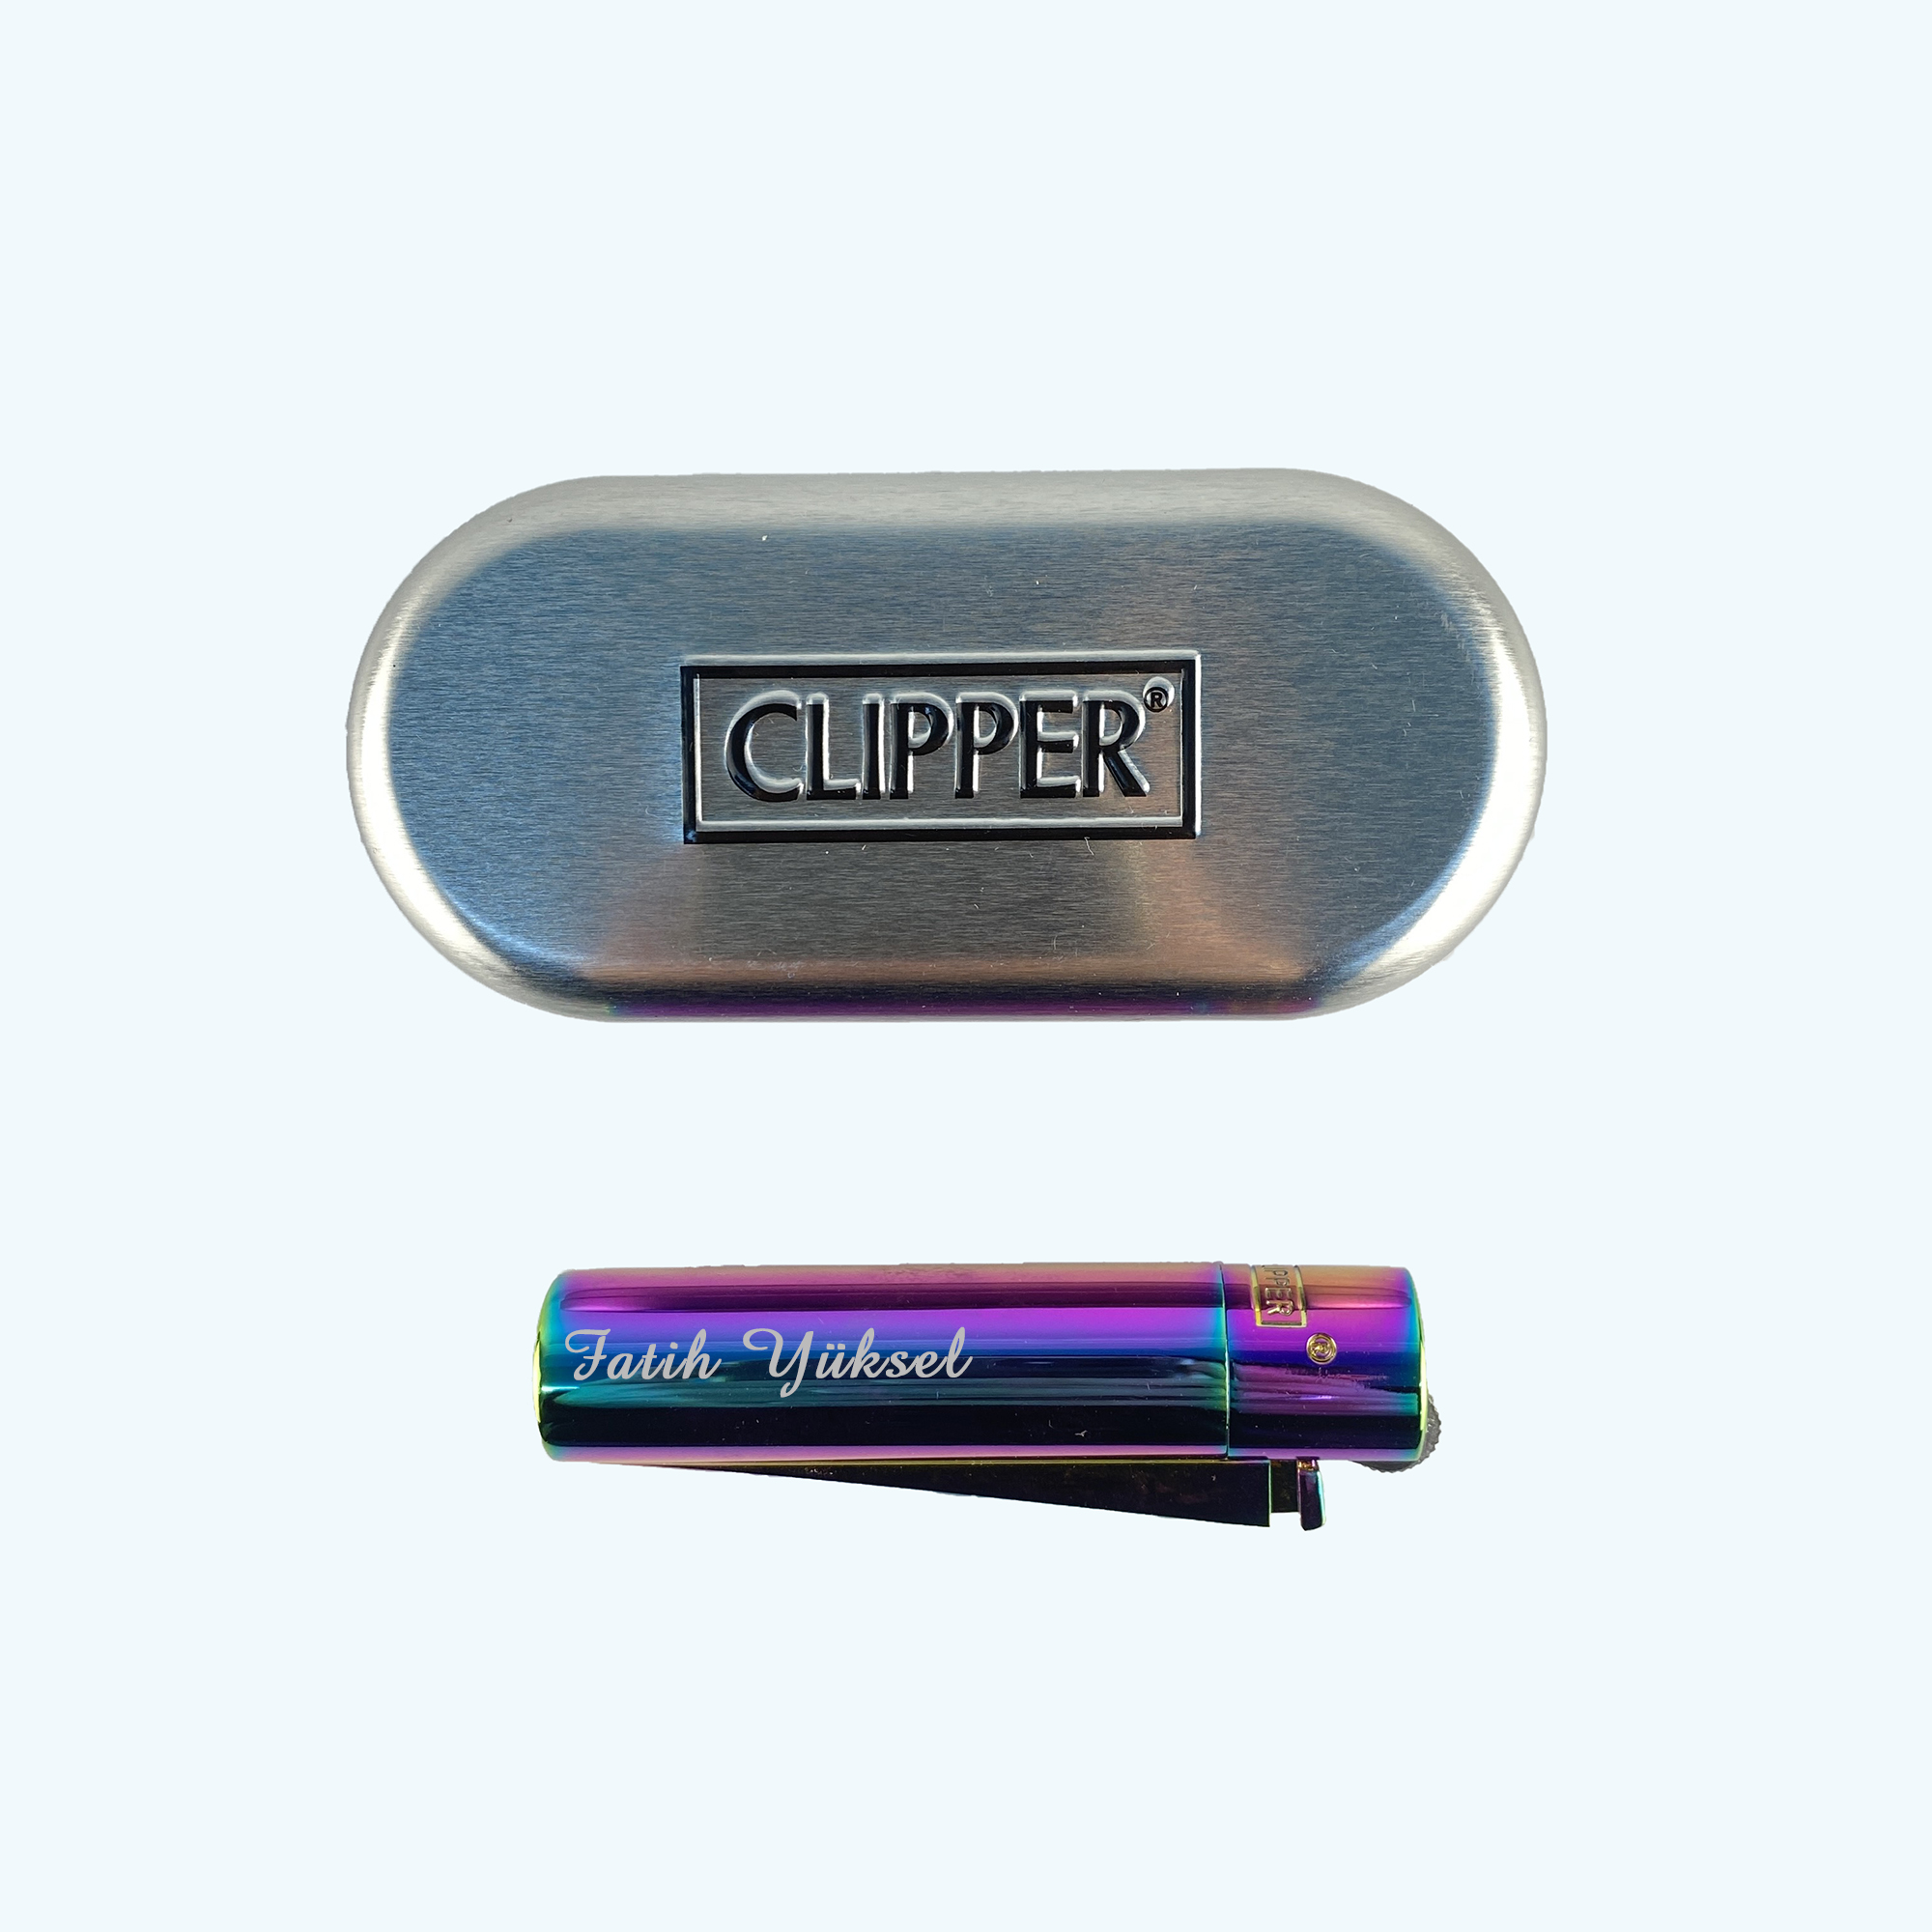 Kişiye Özel Çakmak Clipper Marka Özel Üretim Renk Tasarım Gazlı Çakmak